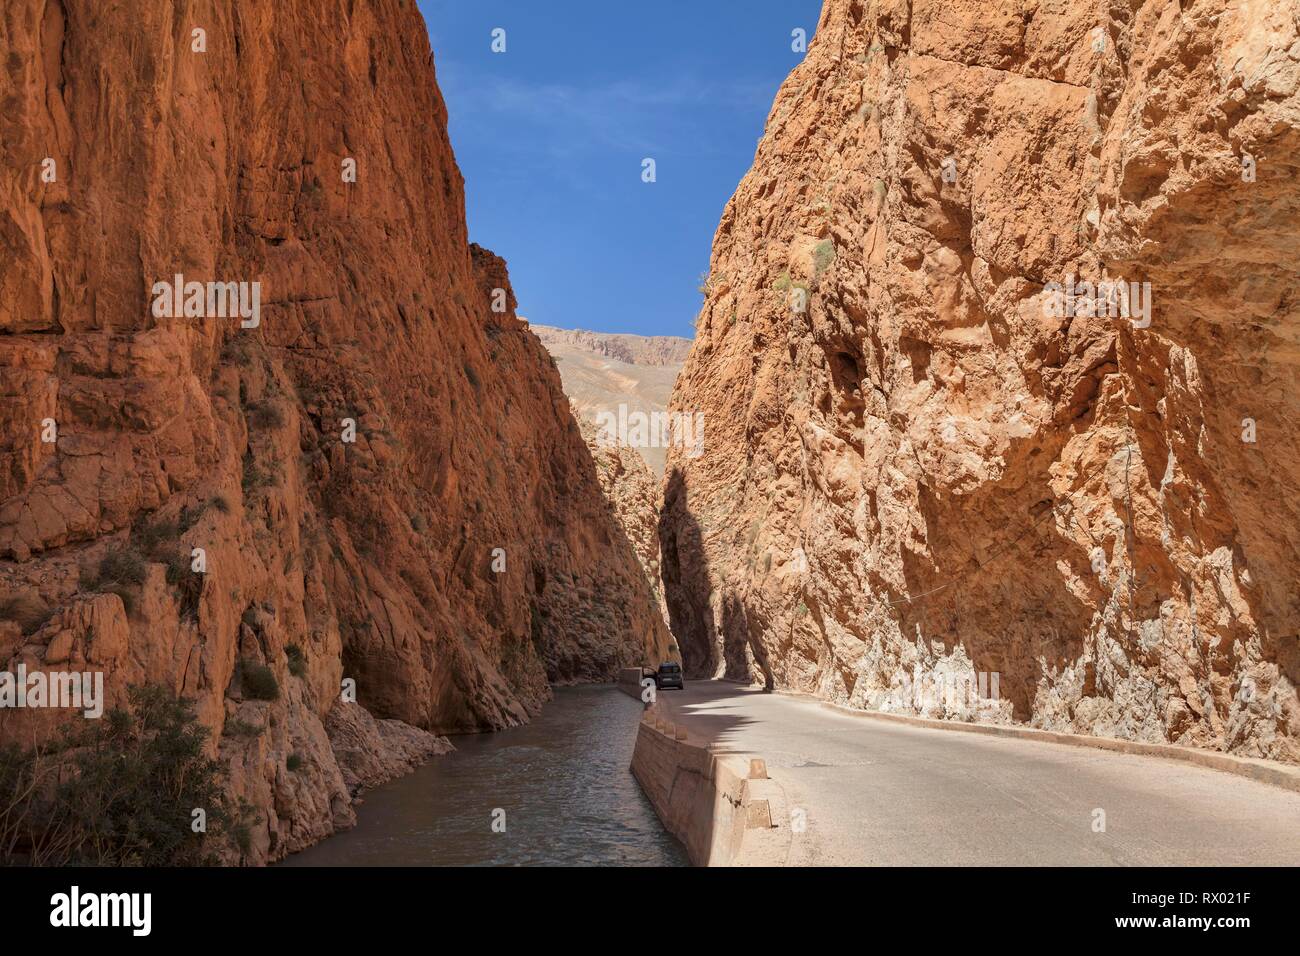 Dades Gorge, Atlas, Morocco Stock Photo